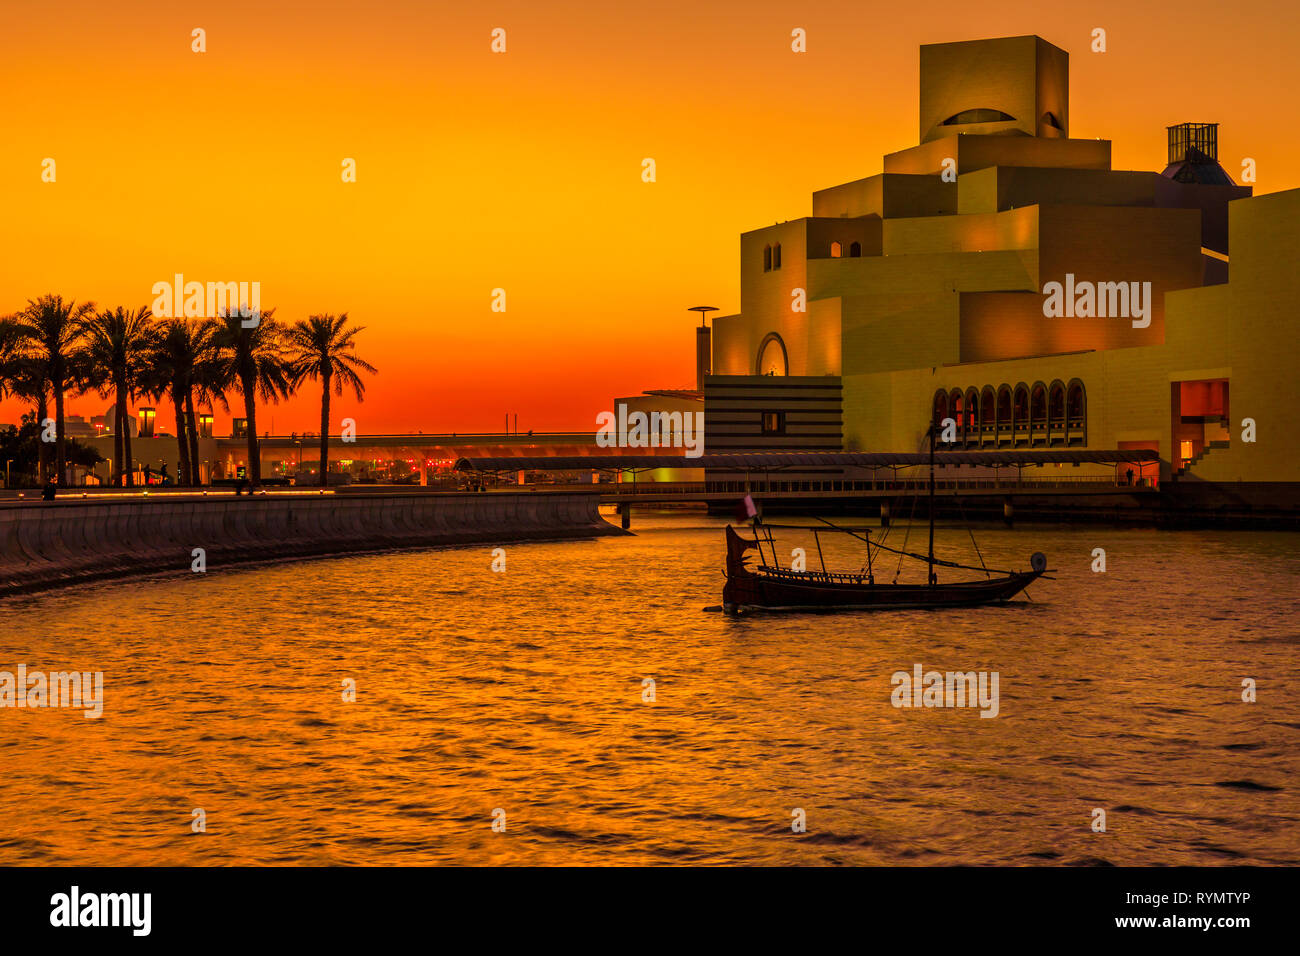 Malerische Küste Landschaft von Doha Bay Park mit Palmen, einer Dhow und Wahrzeichen in bunten Sonnenuntergang Himmel. Urbane Stadtbild von Doha, Hauptstadt von Katar Stockfoto